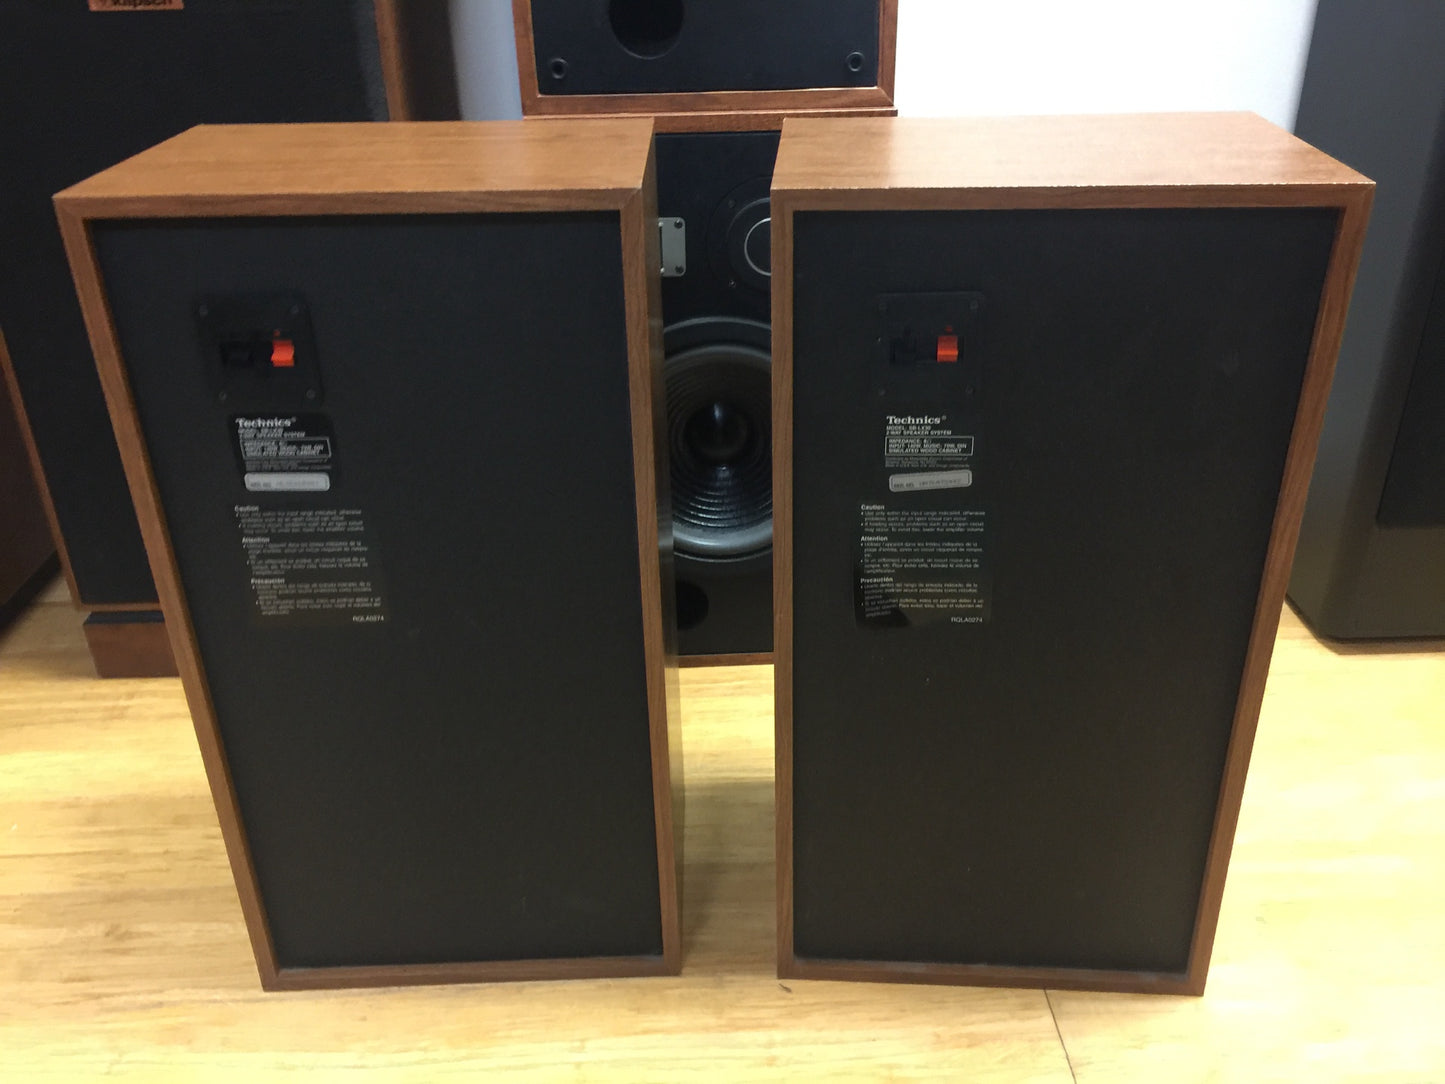 Technics SB-LX30 Speakers SALE